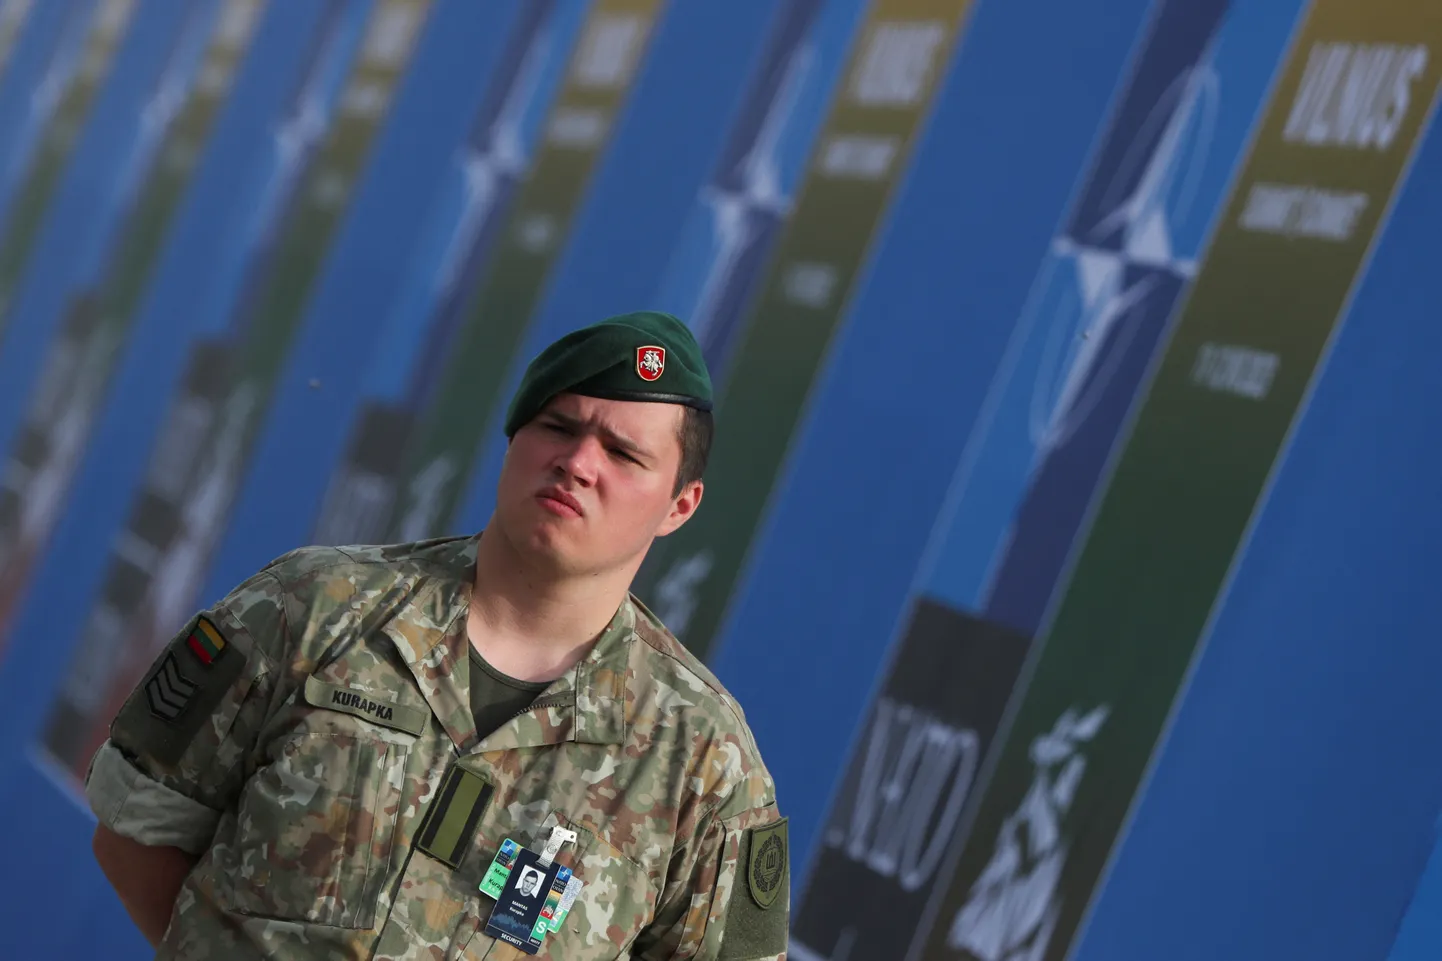 Leedu sõjaväelane valves Vilniuse NATO tippkohtumise juures.